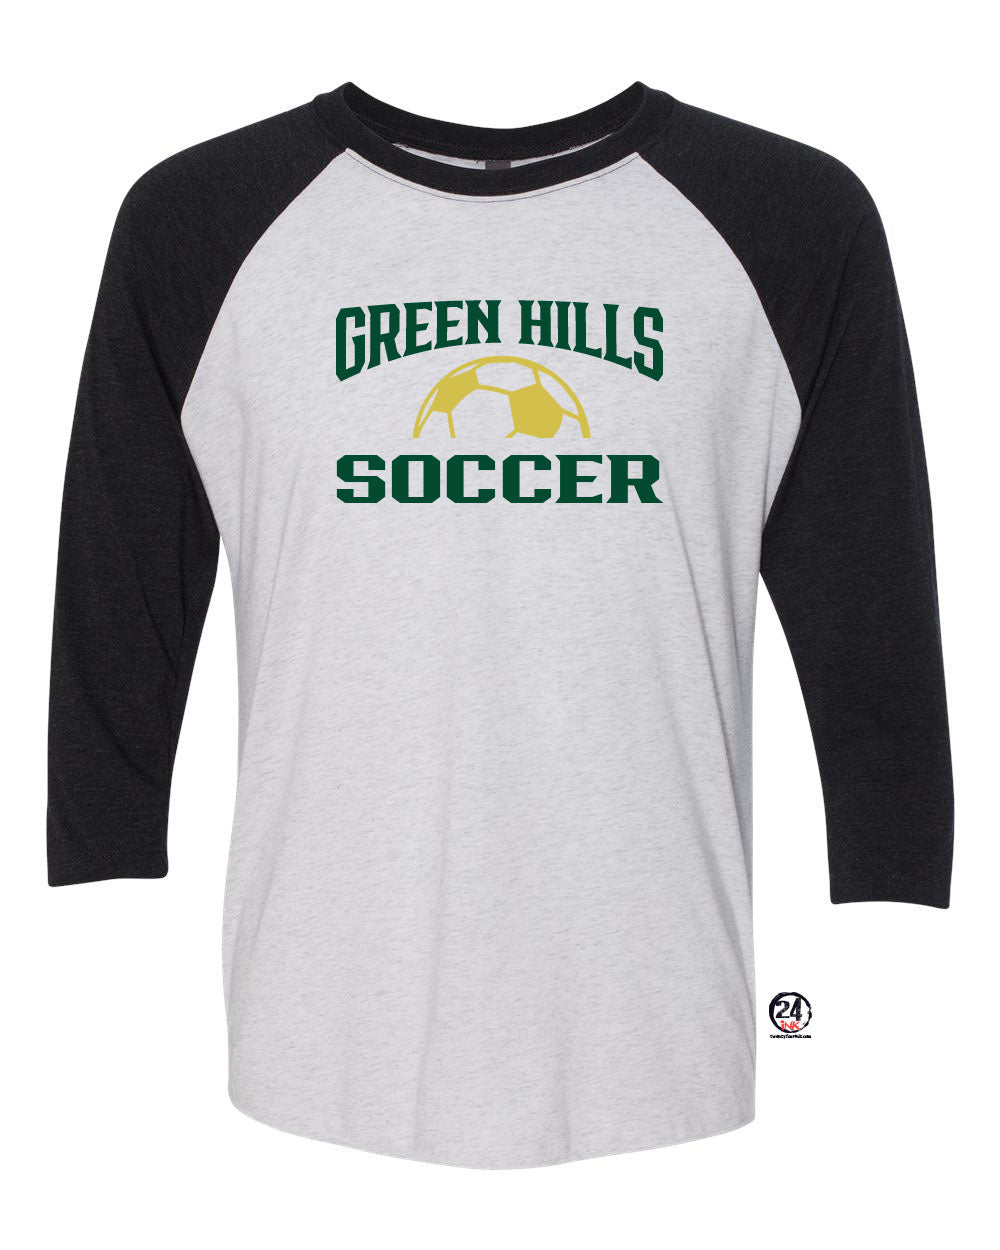 Green Hills Soccer design 1 raglan shirt